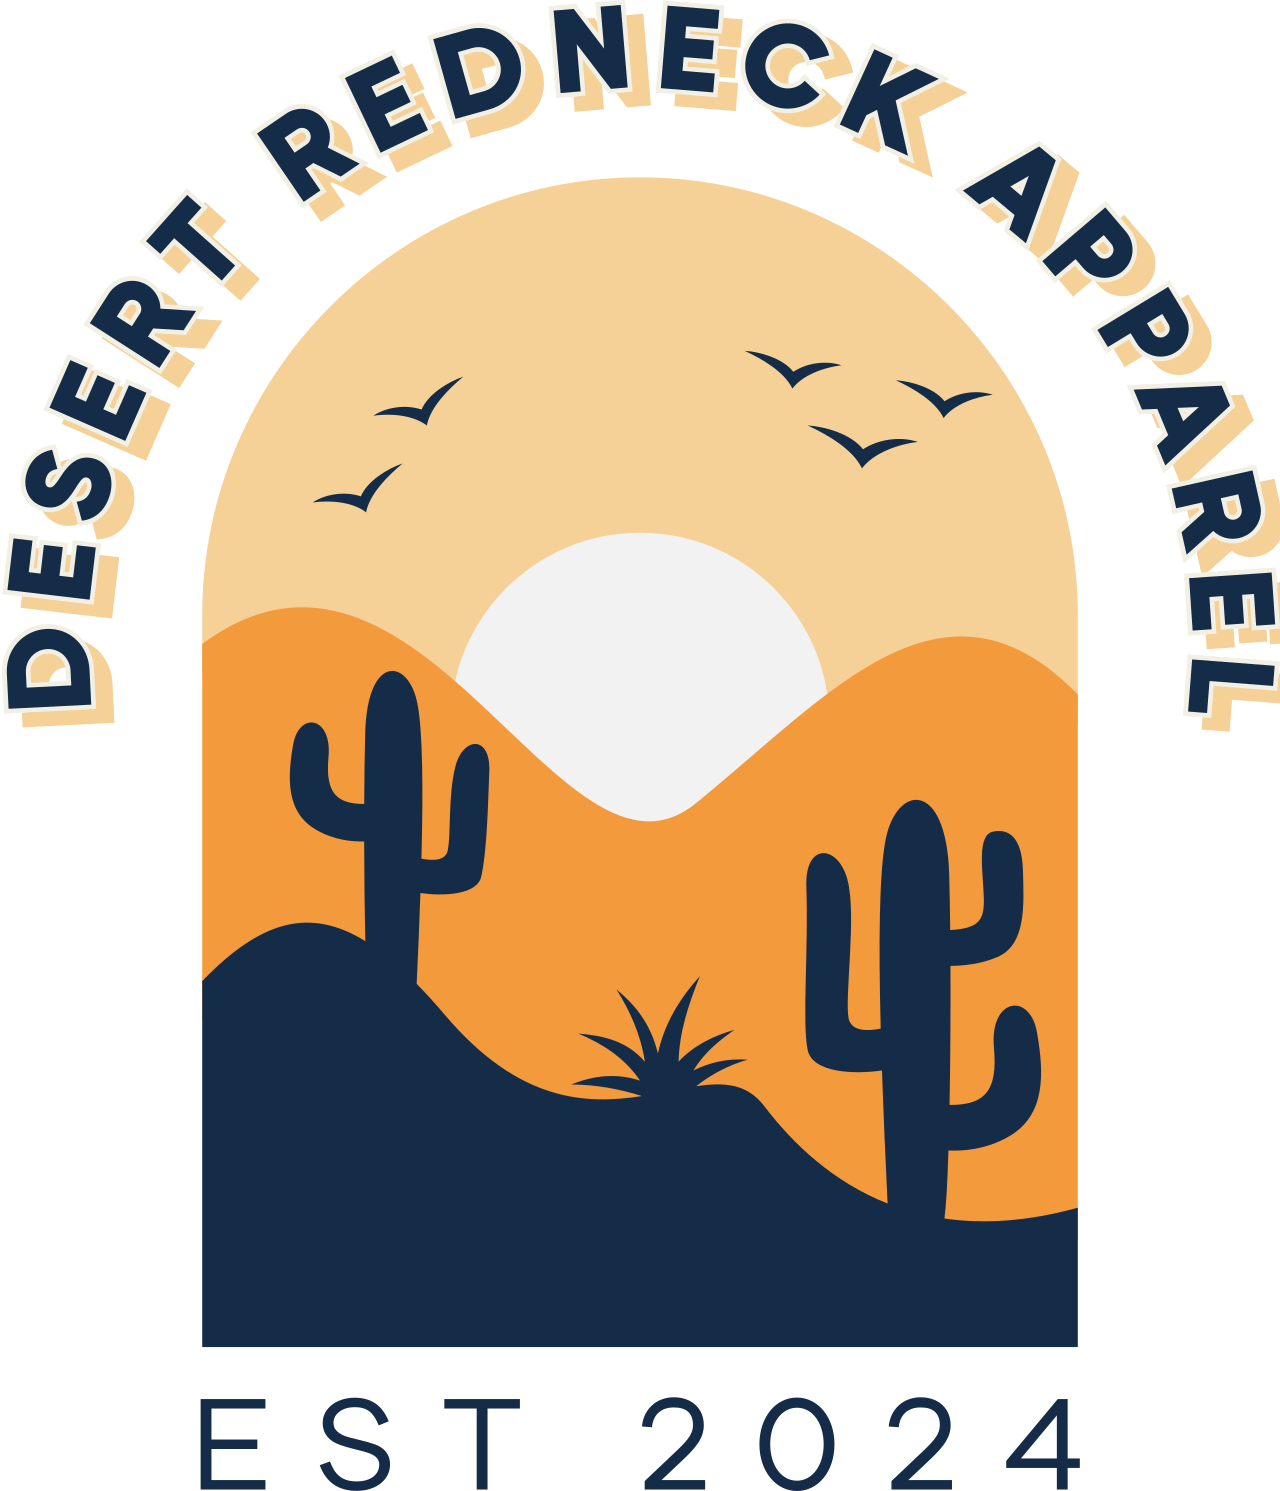 Desert Redneck Apparel's logo